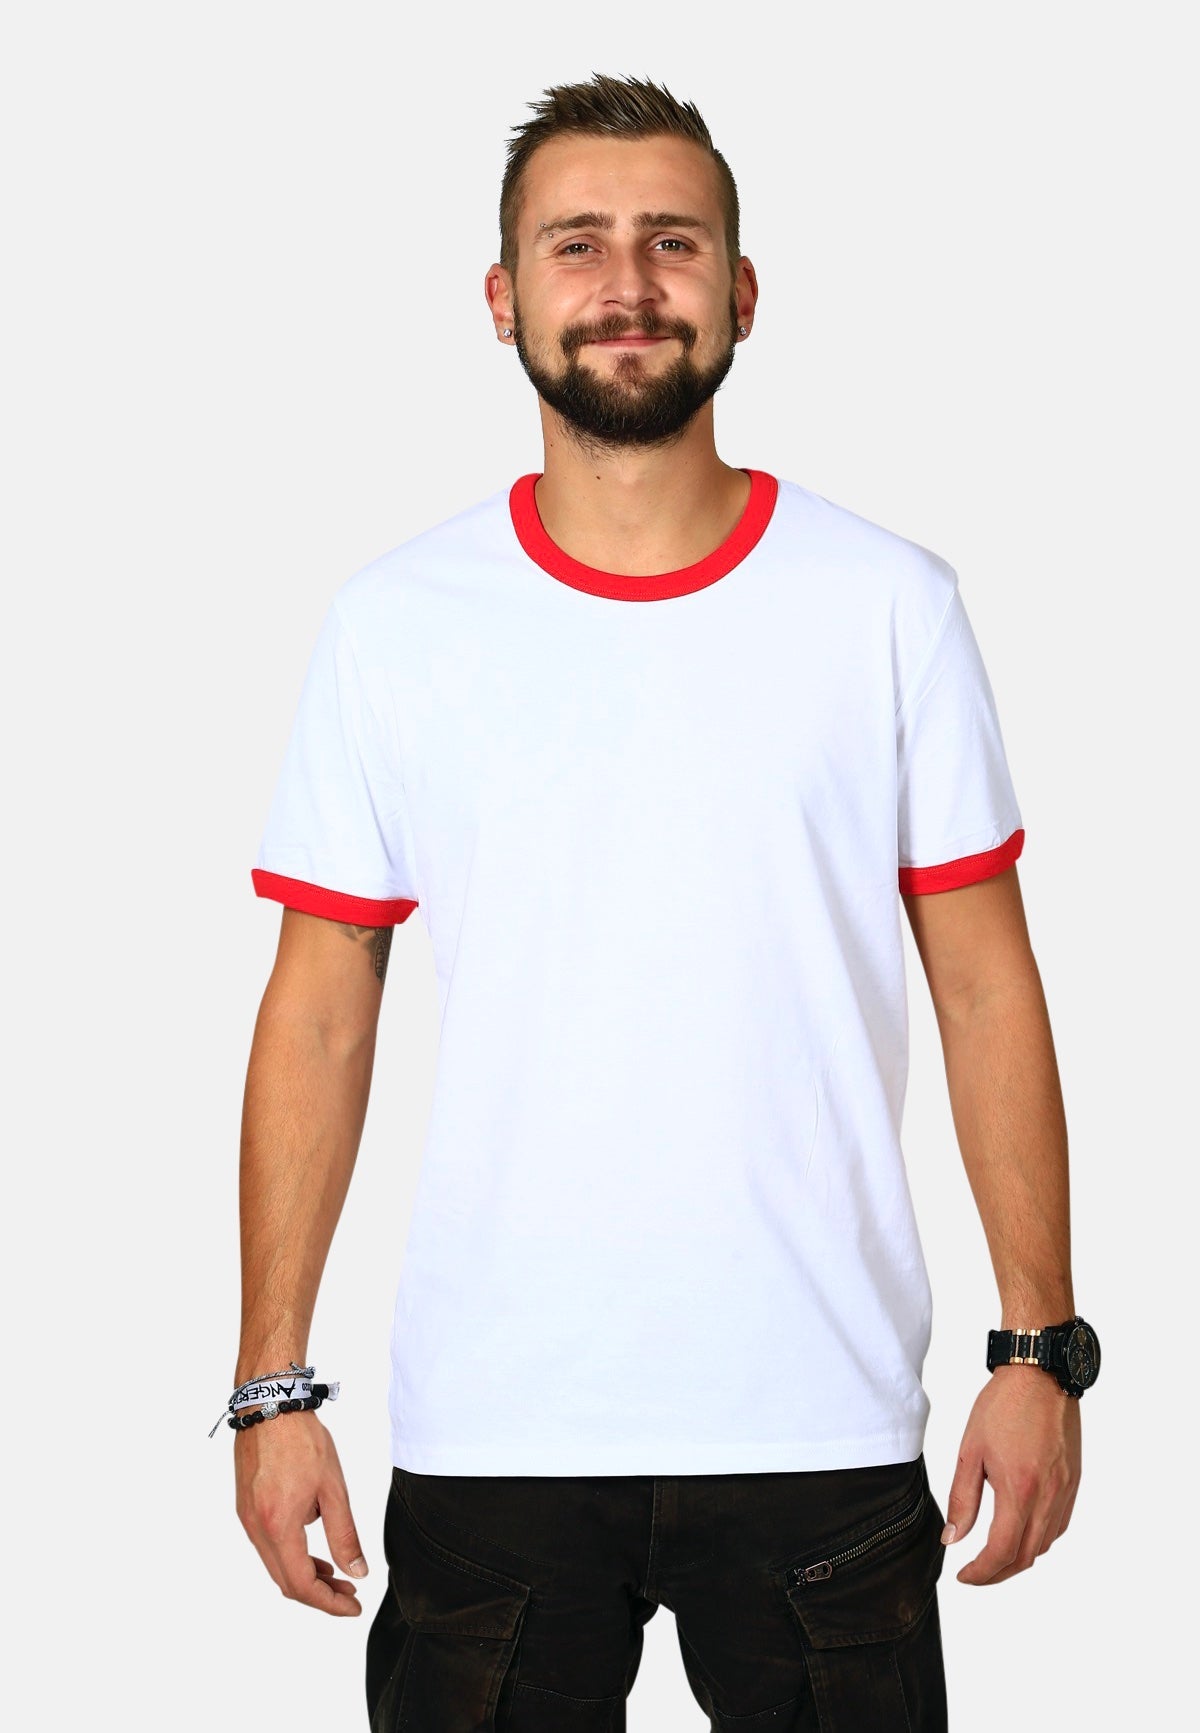 Unisex T-Shirt "Ringer"